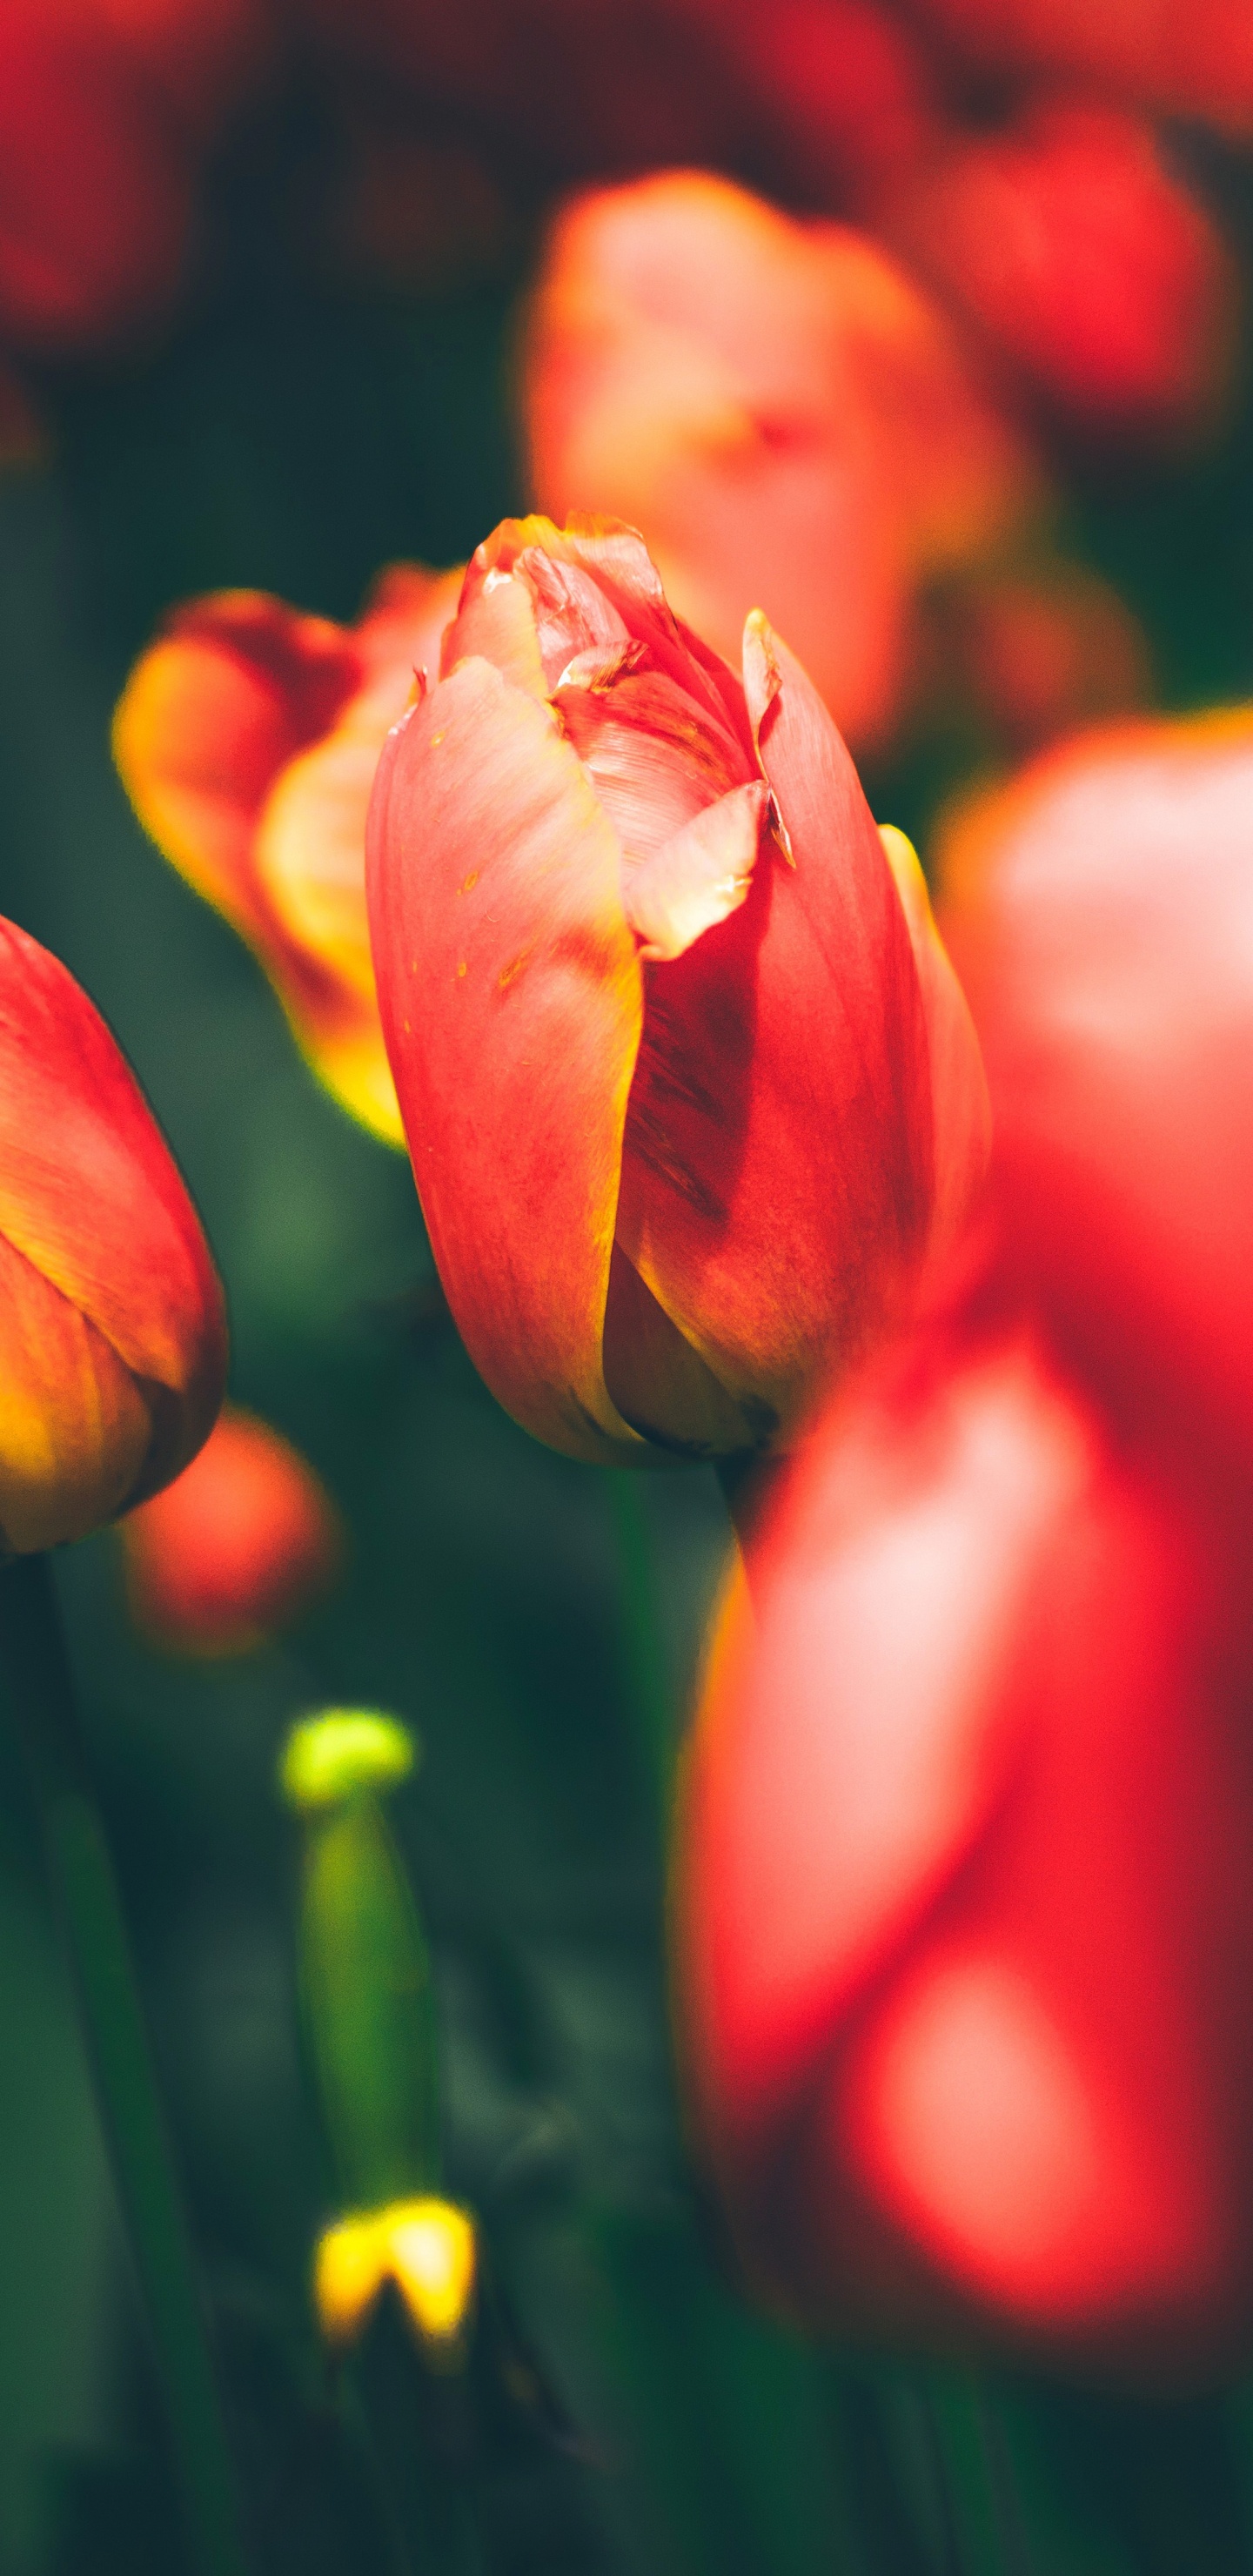 Tulipes Rouges en Fleurs Pendant la Journée. Wallpaper in 1440x2960 Resolution